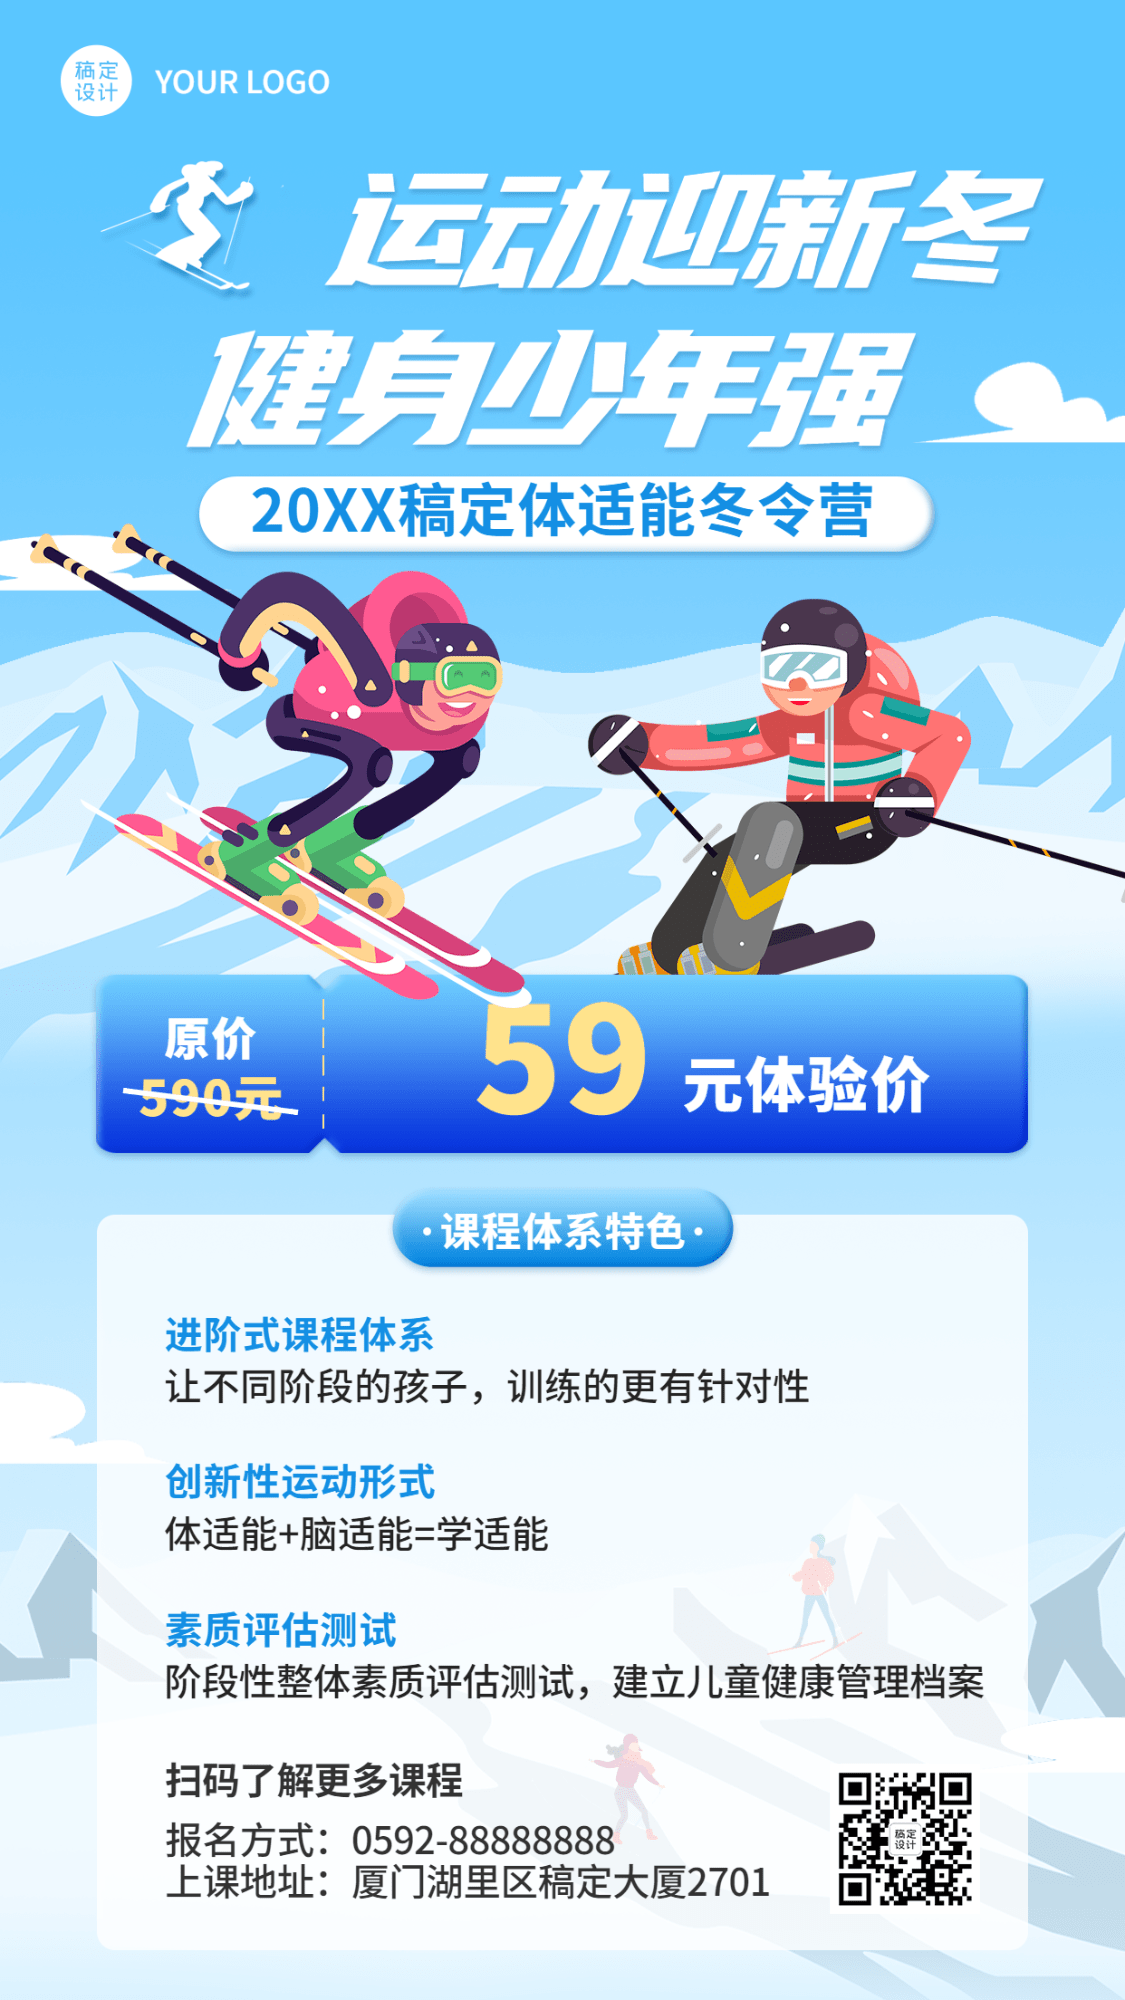 冬奥会营销滑雪培训课程招生海报预览效果